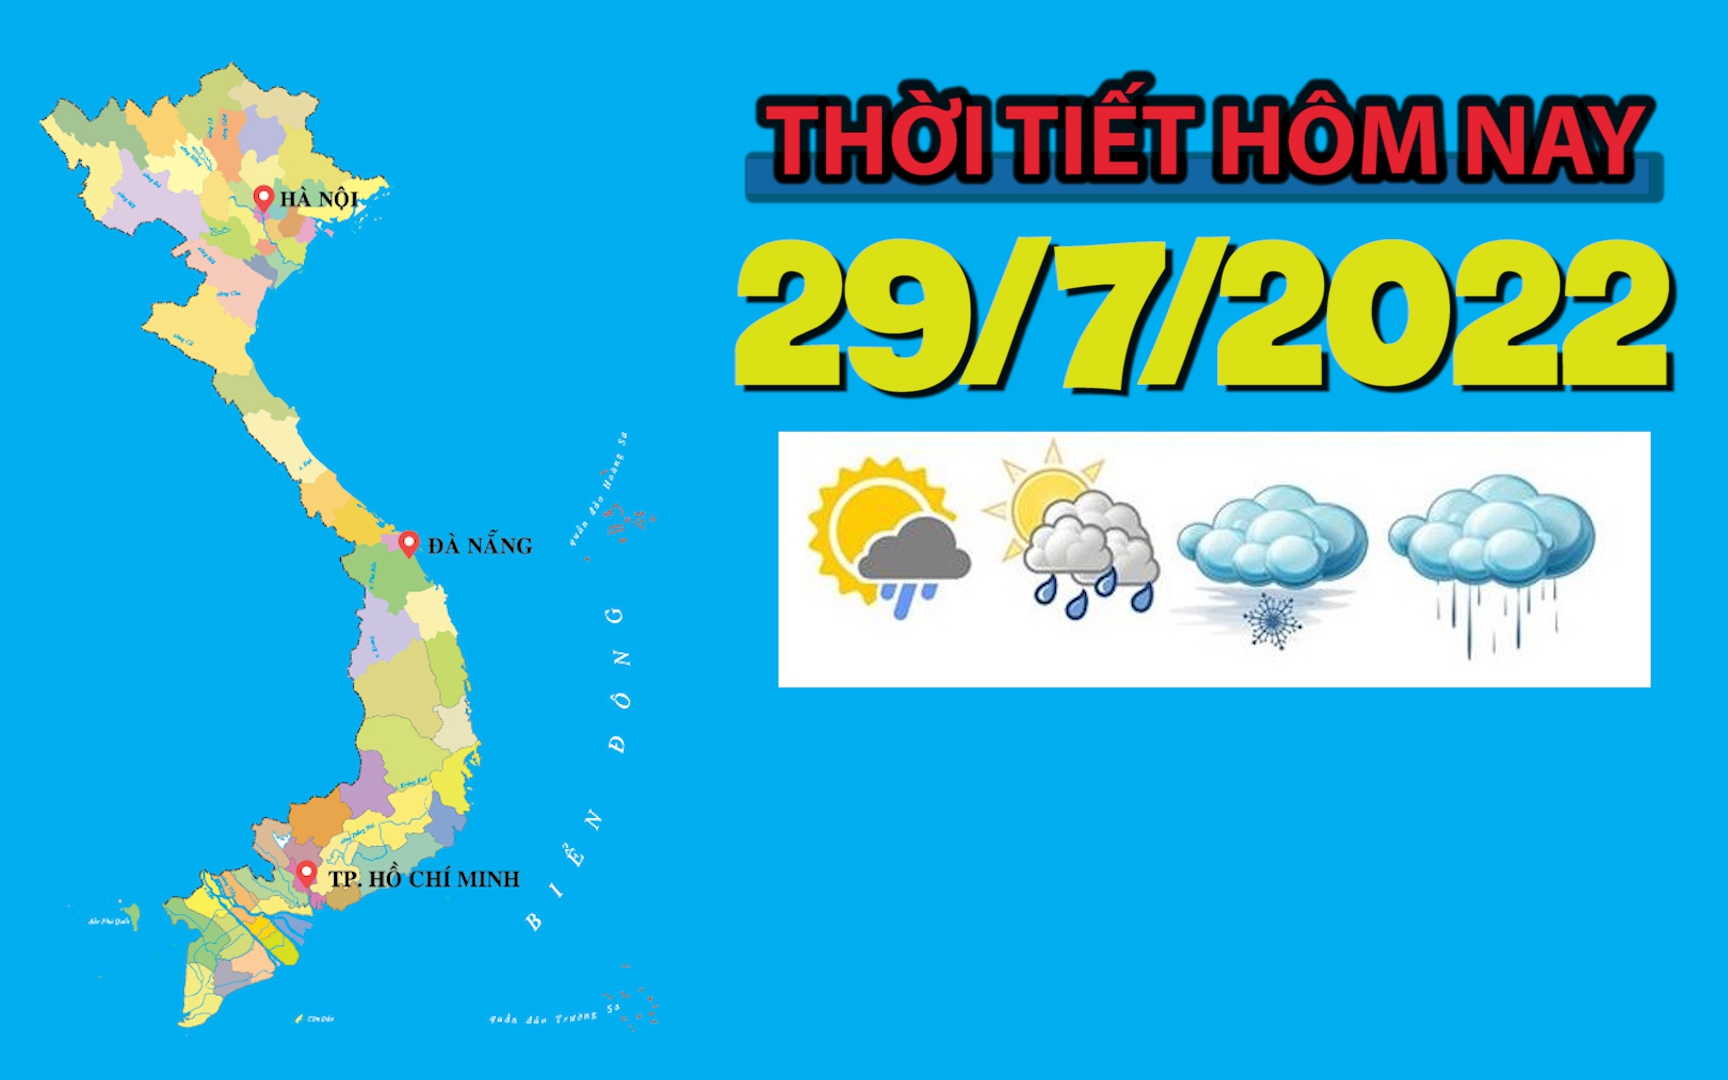 Thời tiết hôm nay 29/7/2022: Tây Nguyên và Nam Bộ có mưa to cục bộ